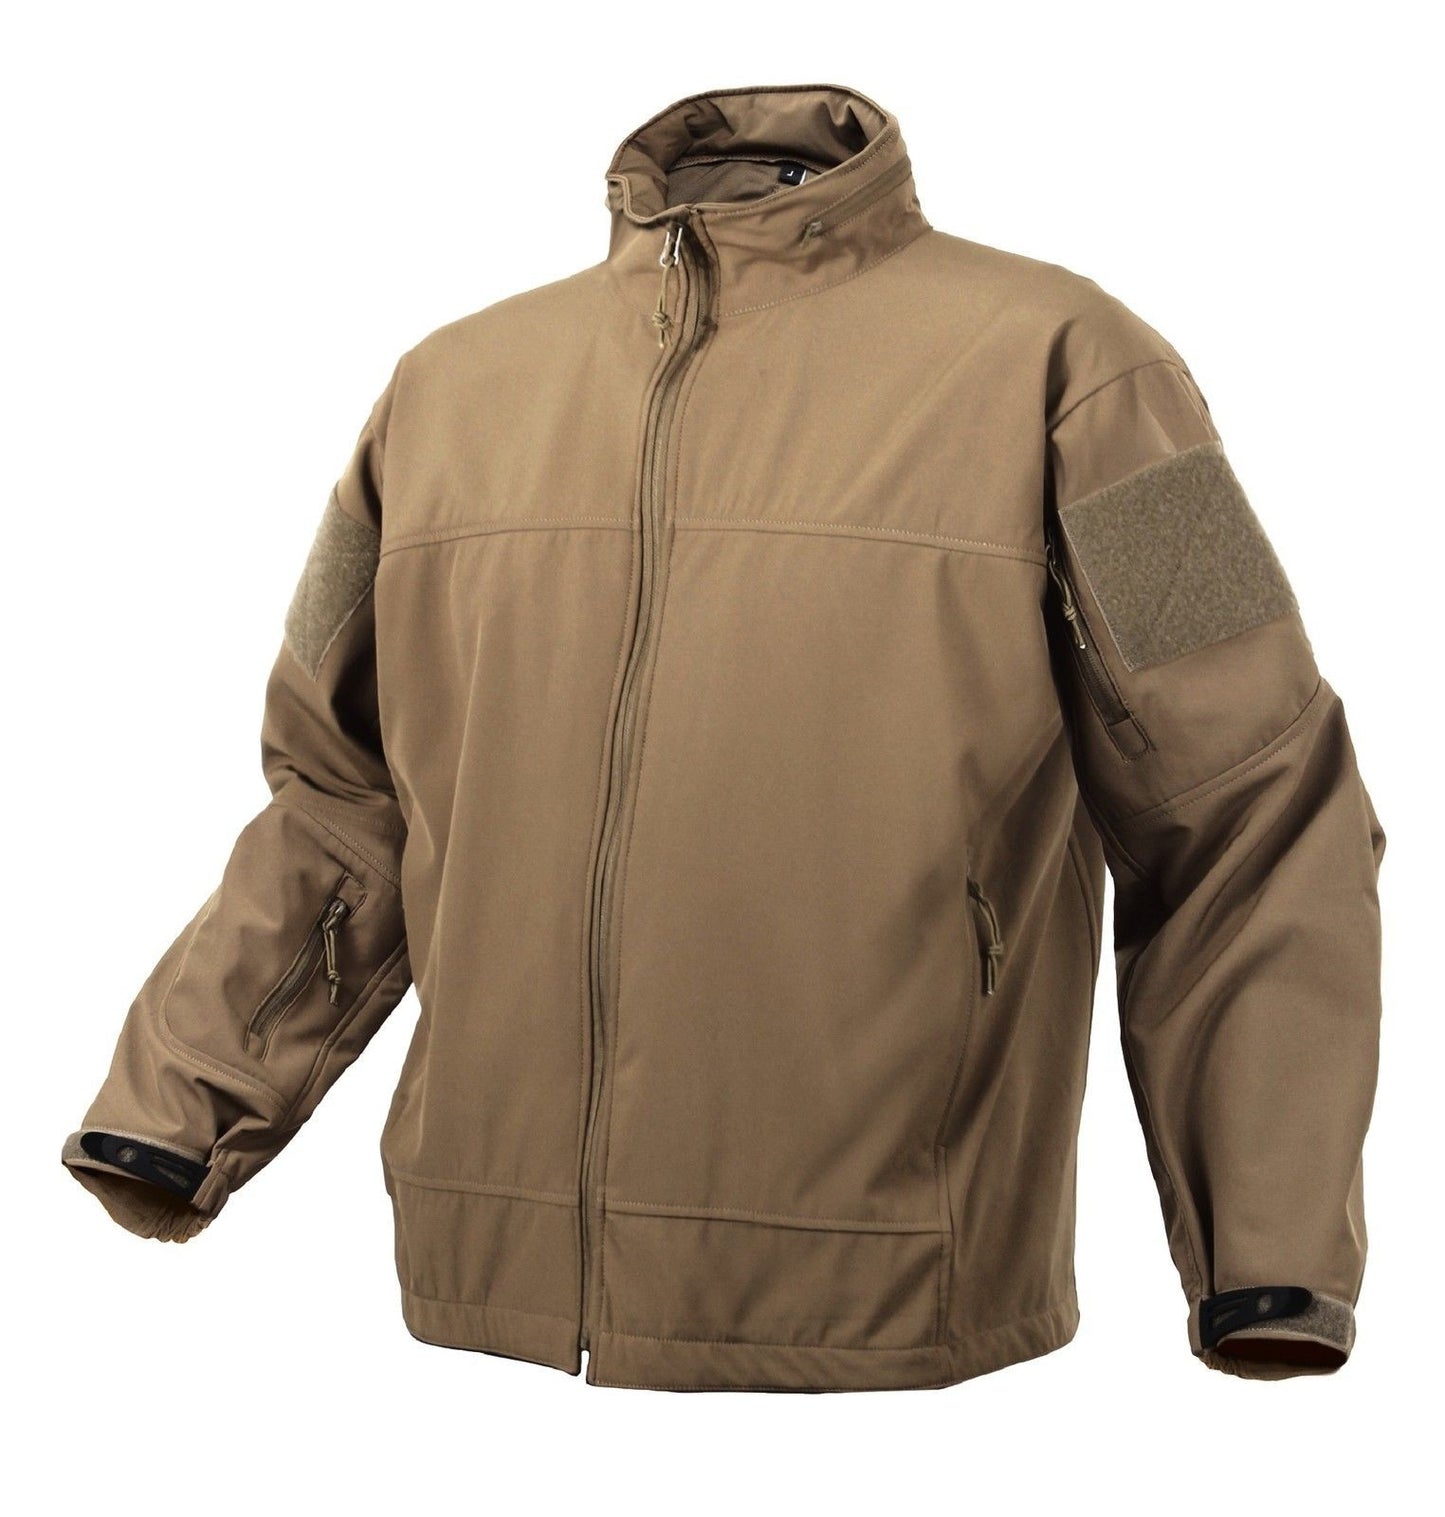 Covert Ops Light Weight Soft Shell Jacket Tactical Waterproof Lightwei ...